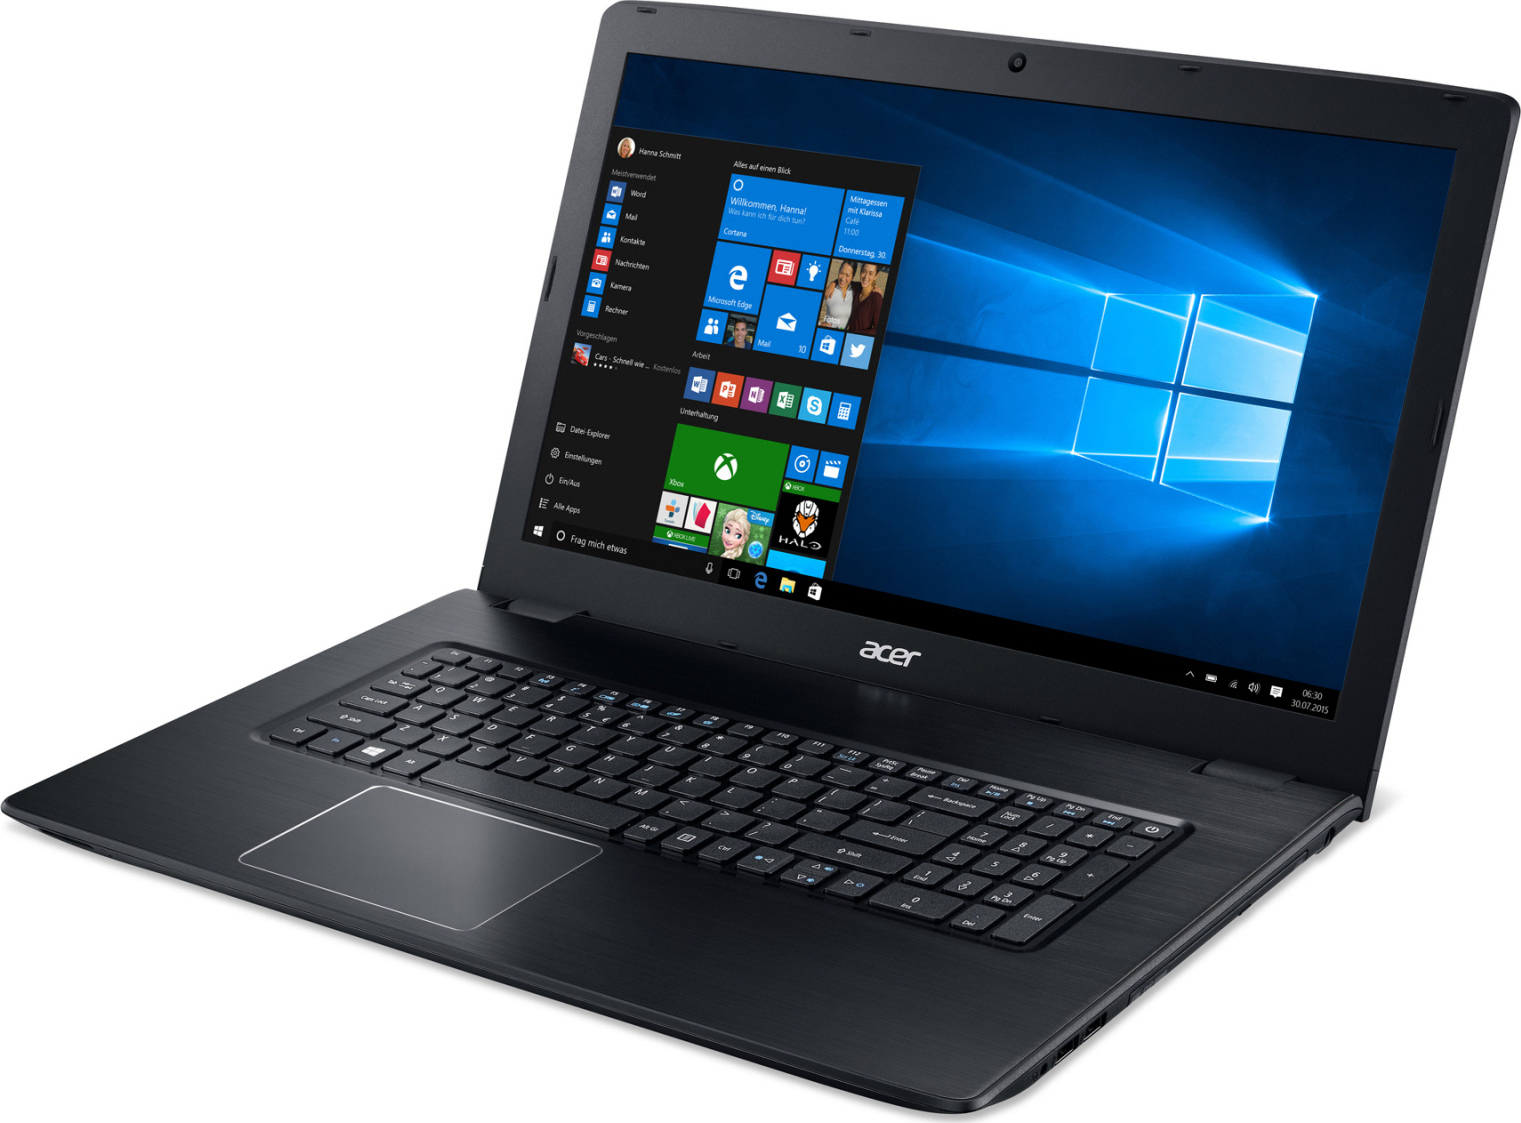 Acer Aspire E5 576G i7 7500U 8GB 1TB GeForce 940MX FHD 